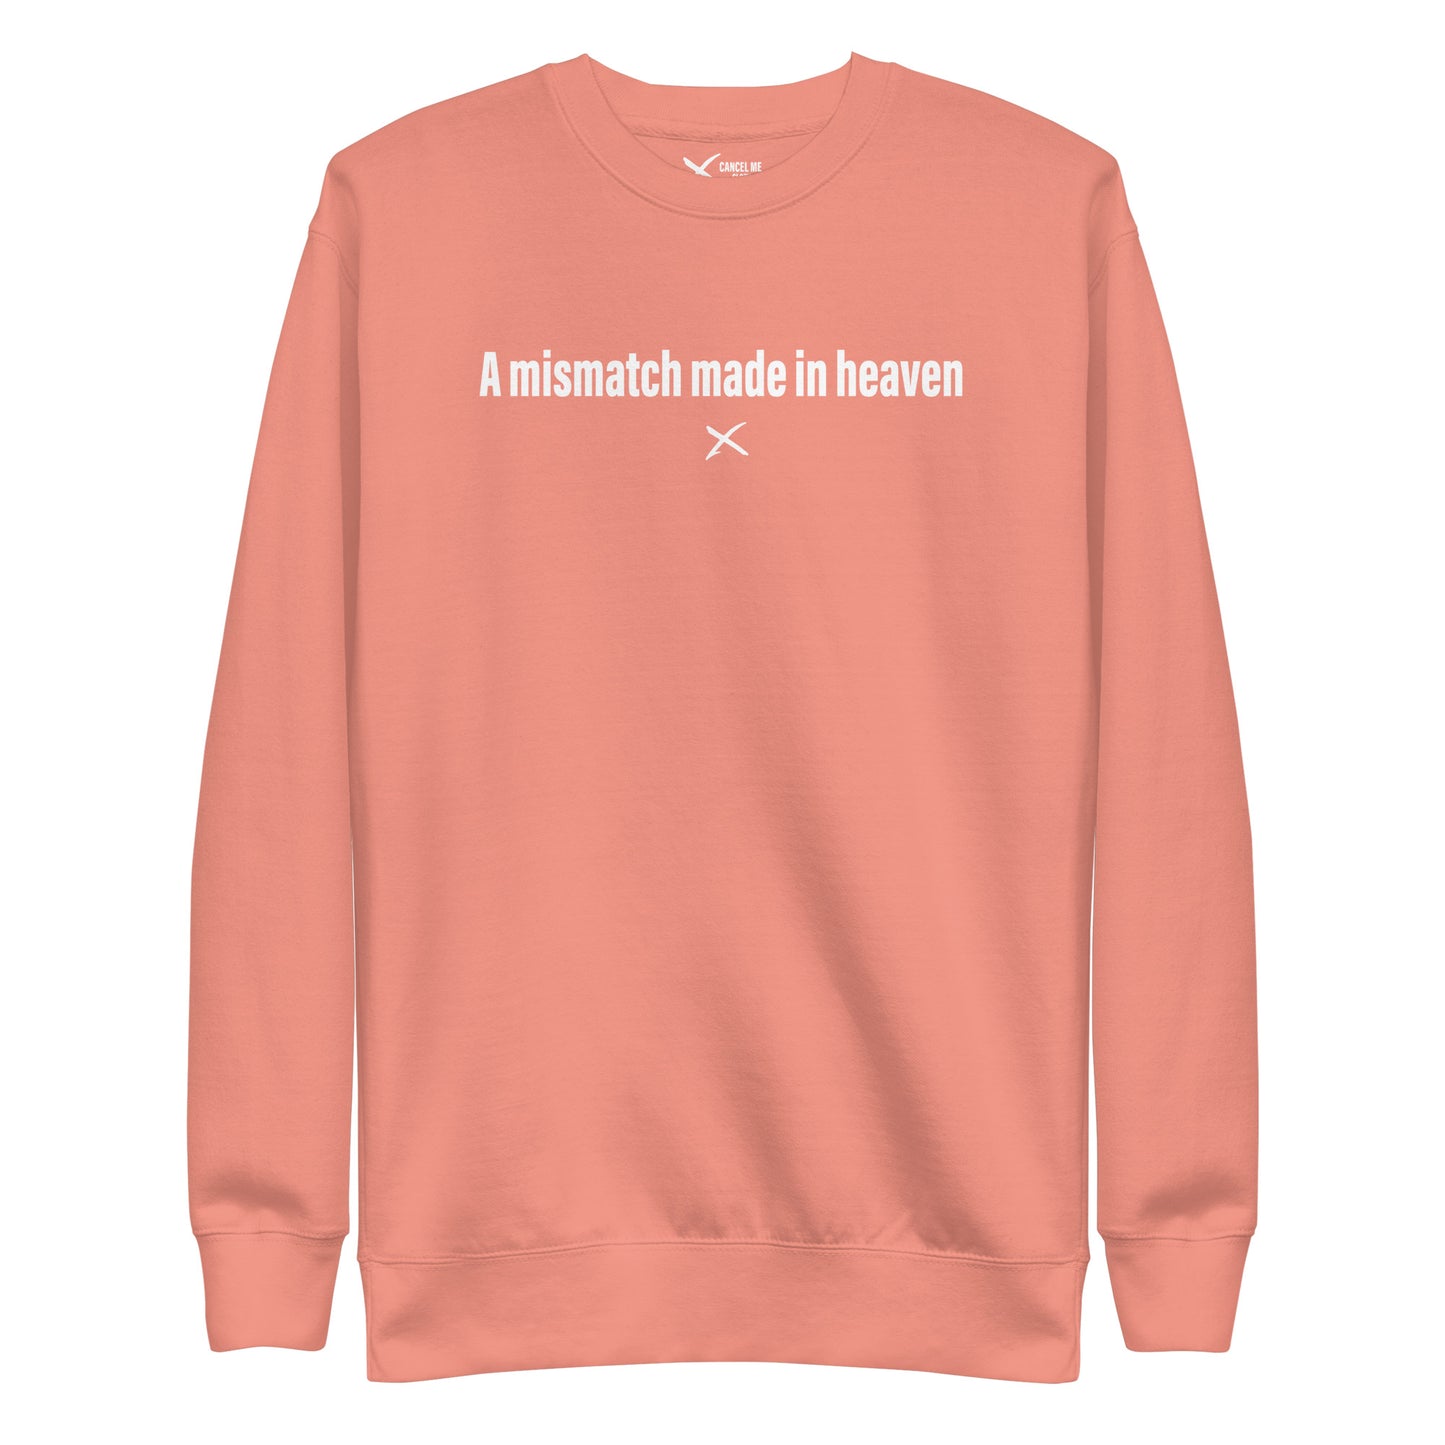 A mismatch made in heaven - Sweatshirt